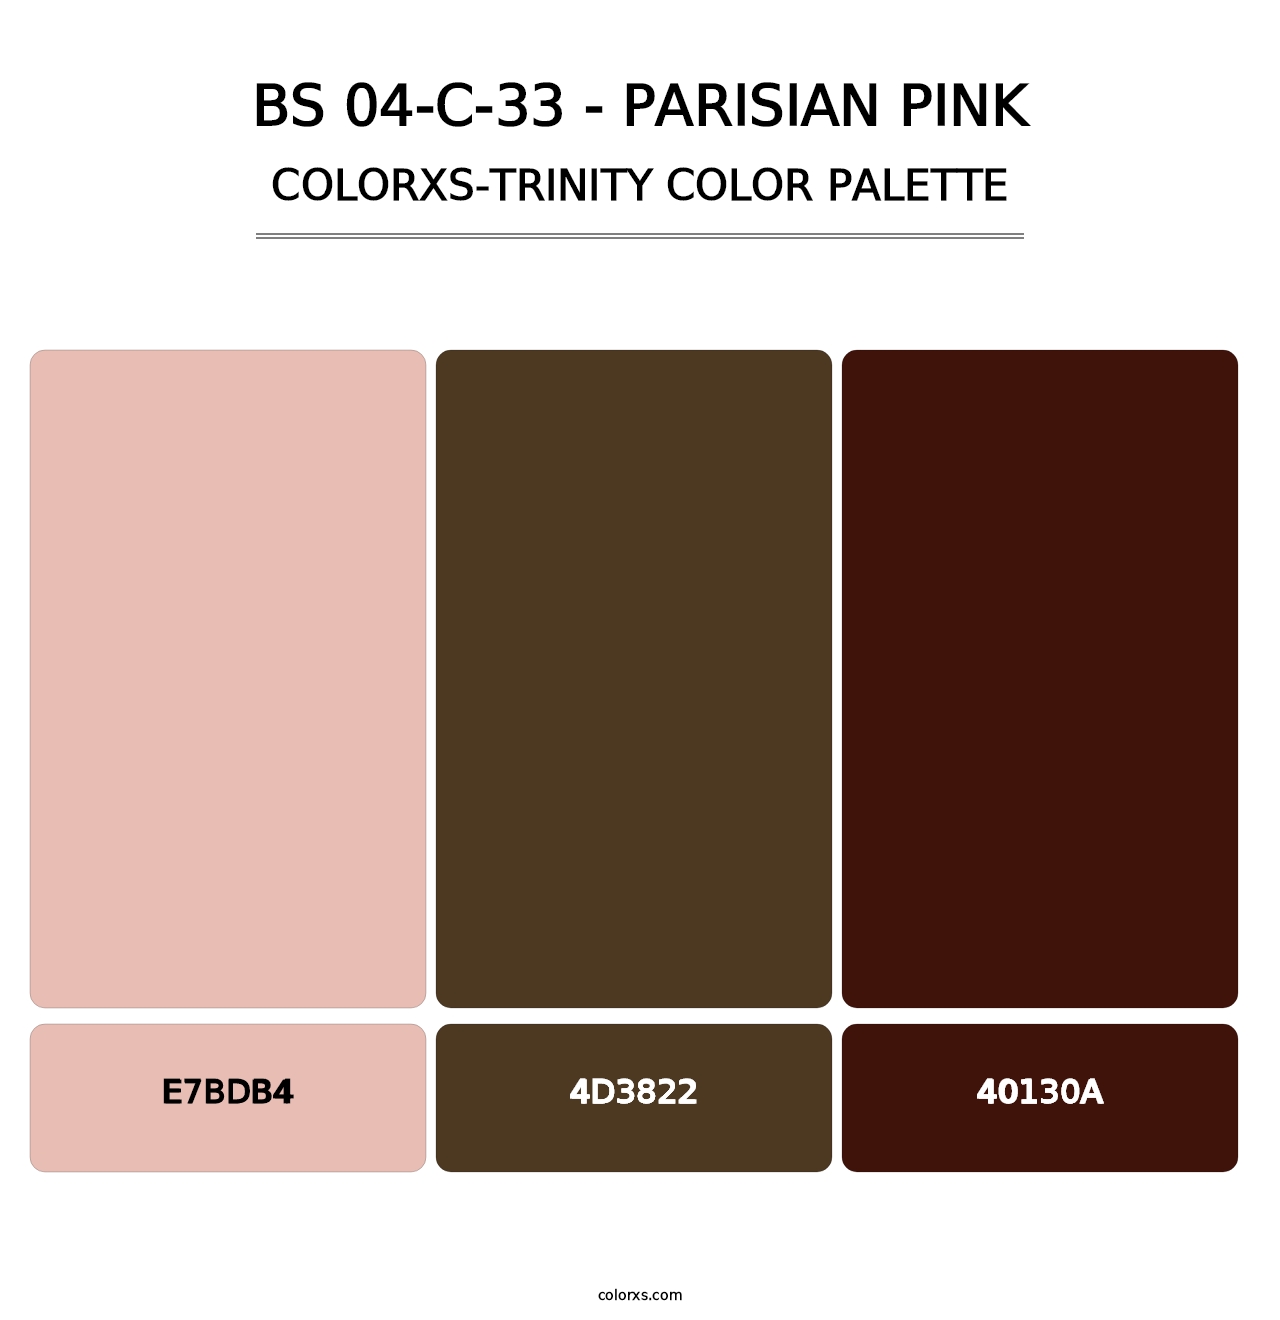 BS 04-C-33 - Parisian Pink - Colorxs Trinity Palette